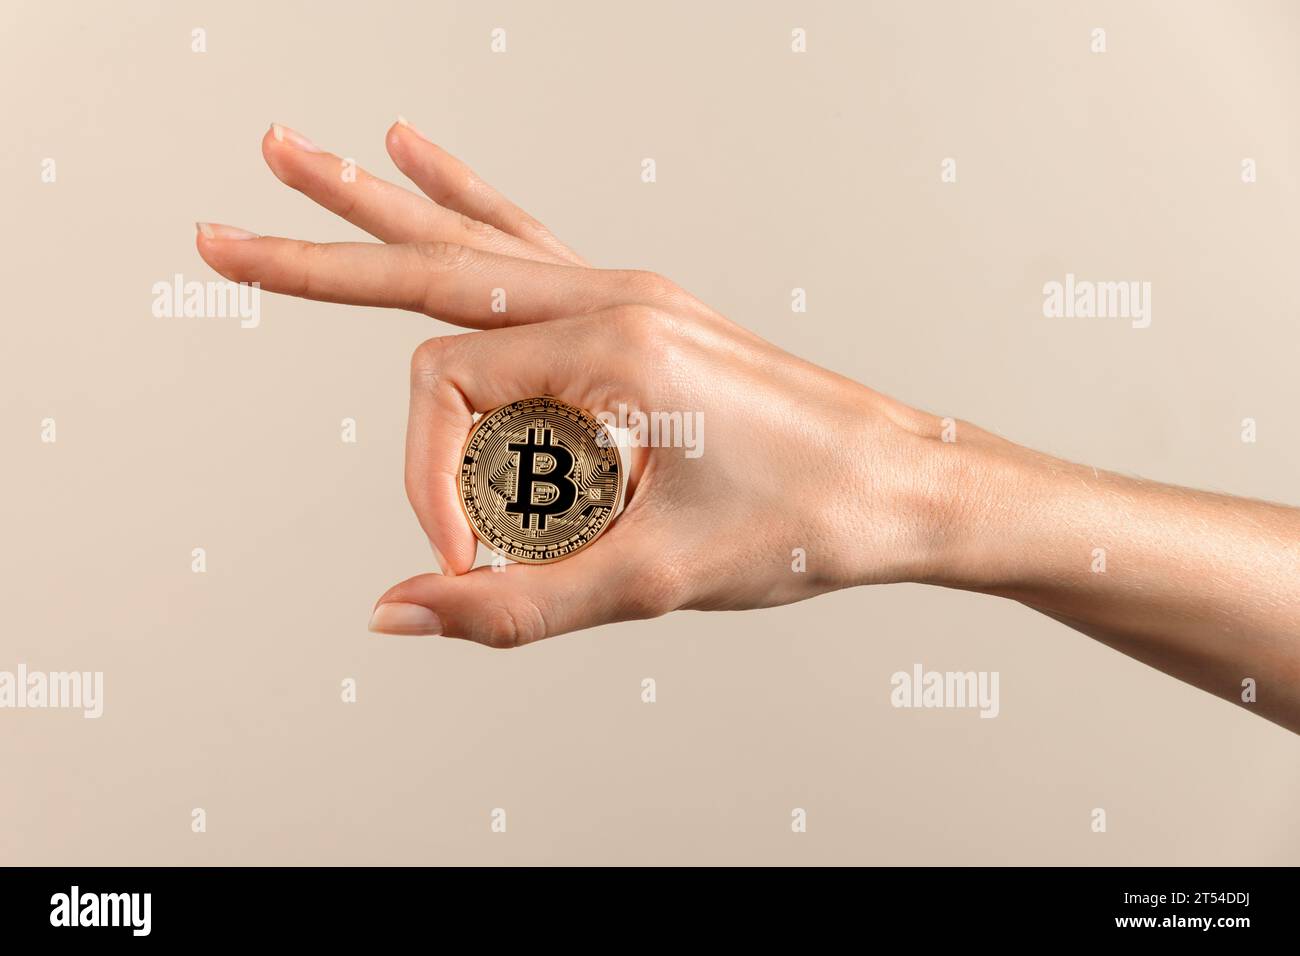 Anonyme Frau mit rundem Bitcoin mit B-Inschrift in der Mitte mit gepflegtem Daumen und Zeigefingern der Hand in reflektierendem Licht gegen beige bac Stockfoto